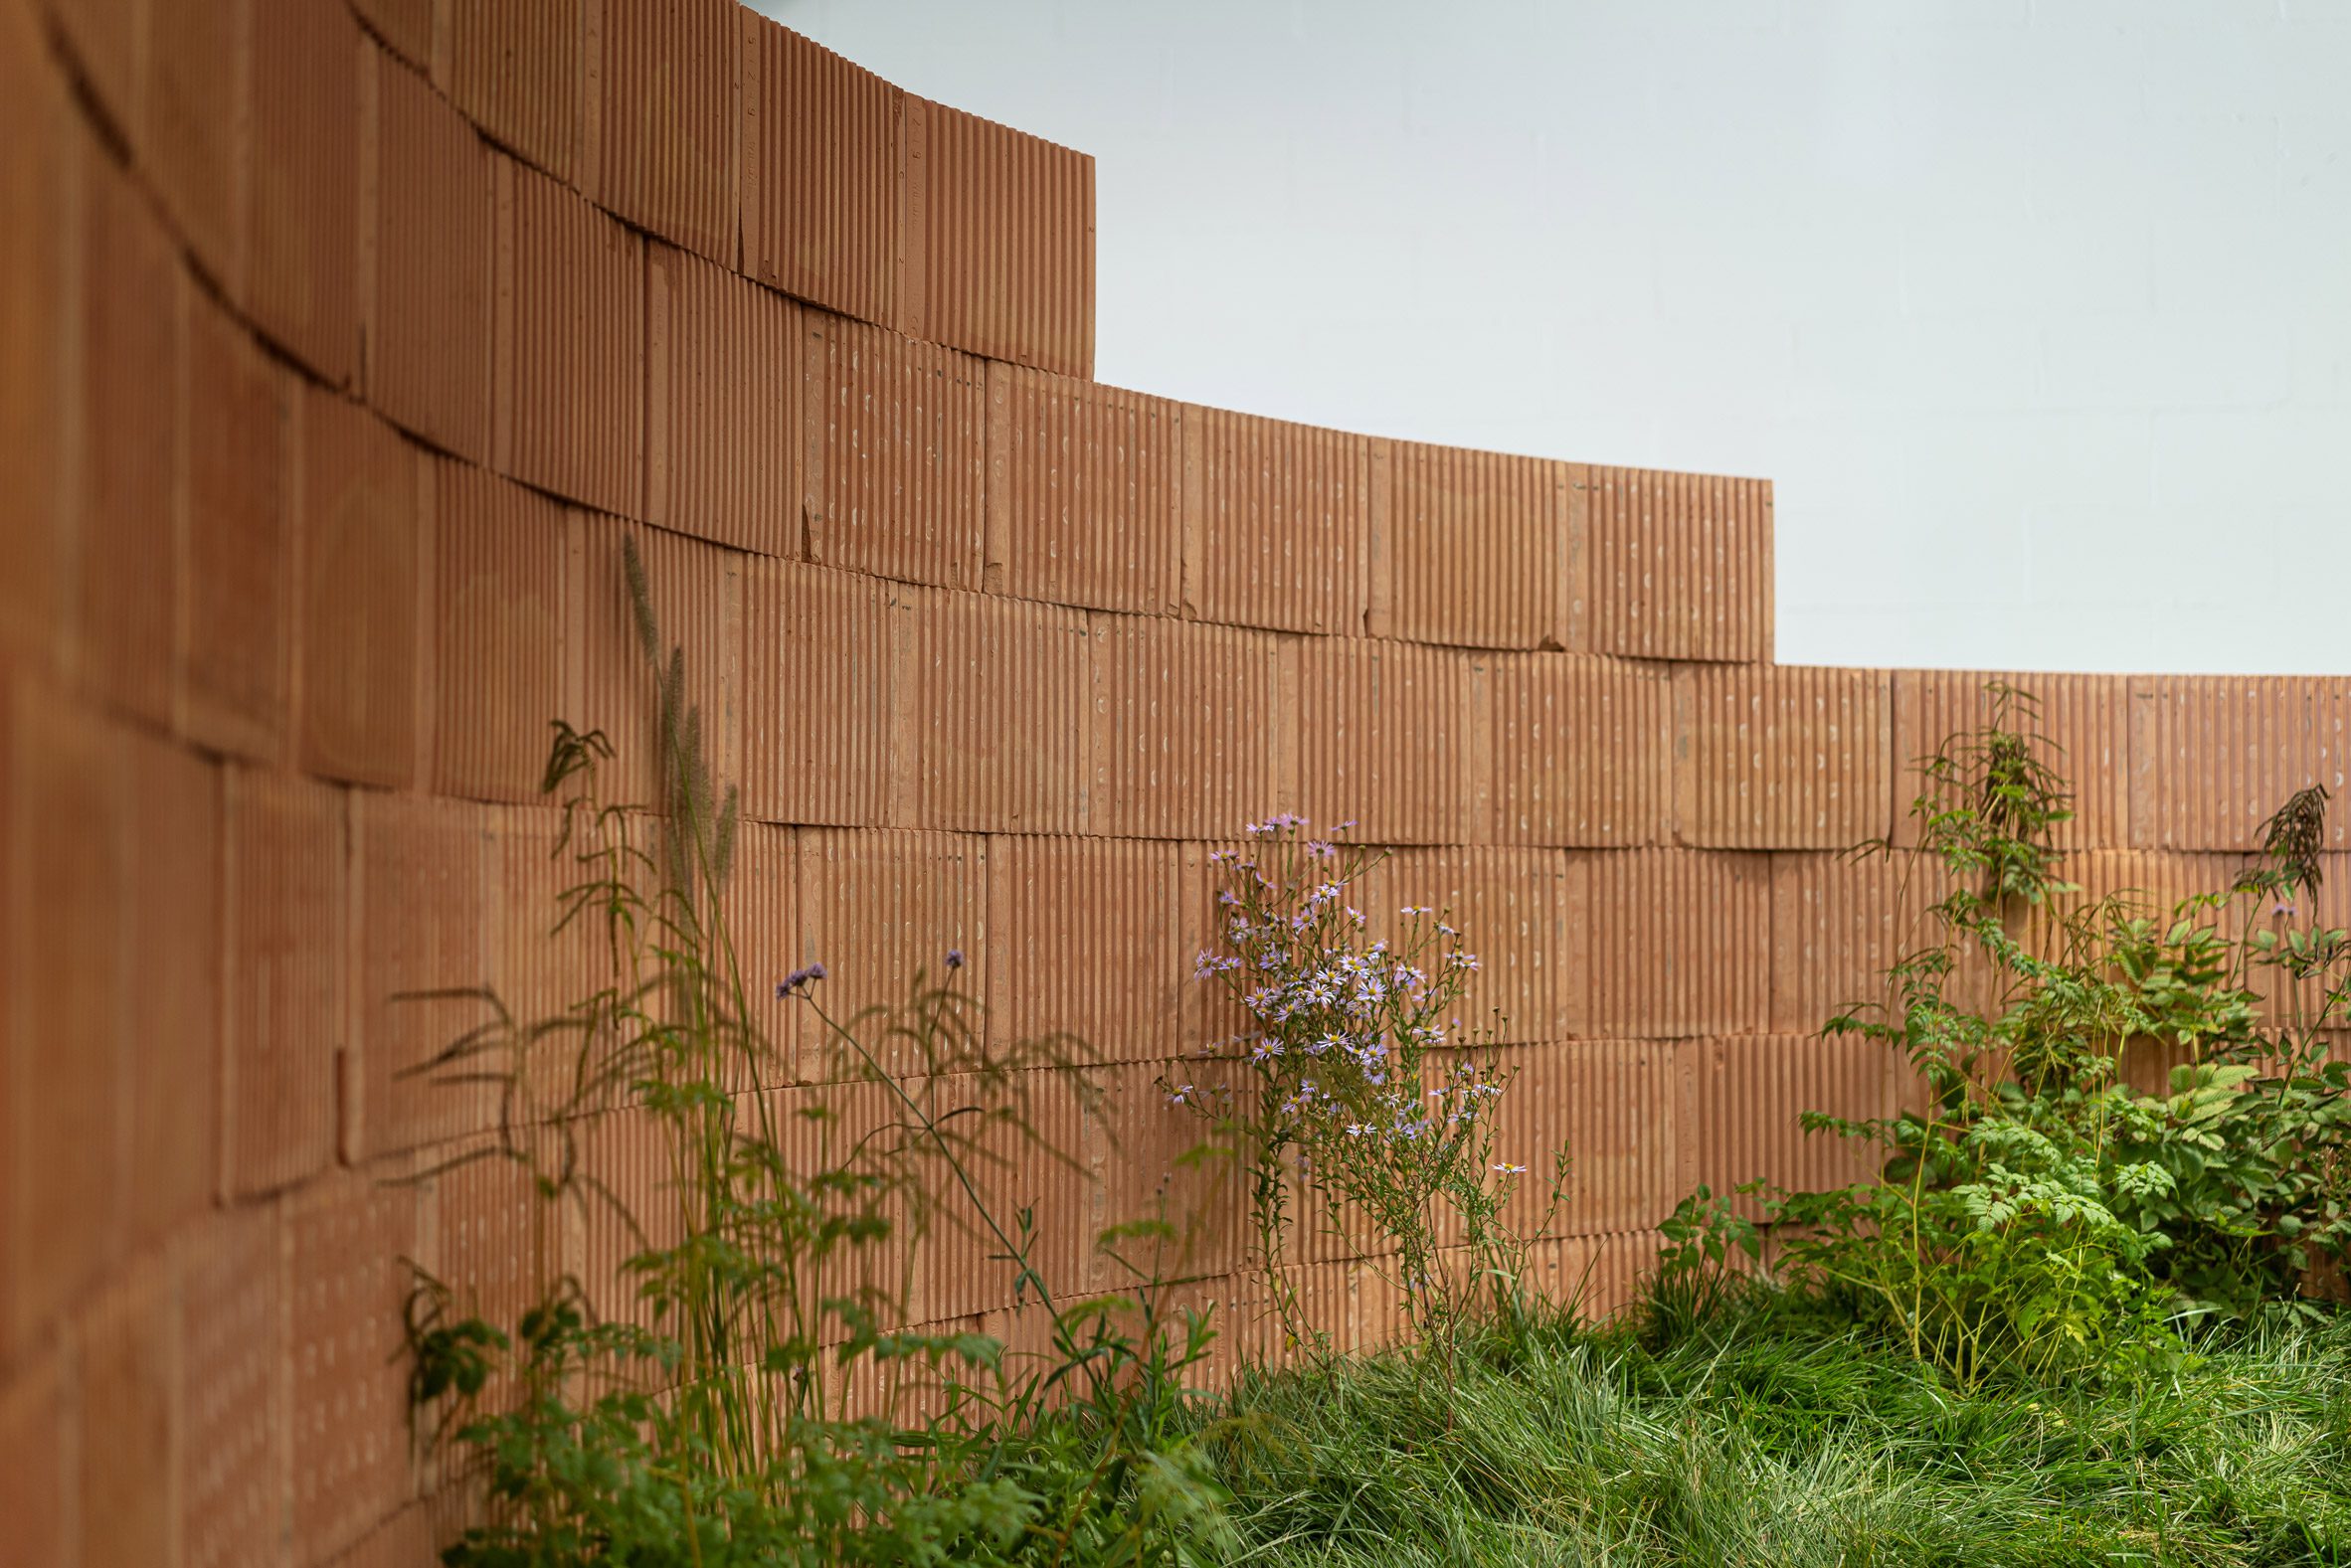 Brick wall in Vestre installation at Milan design week